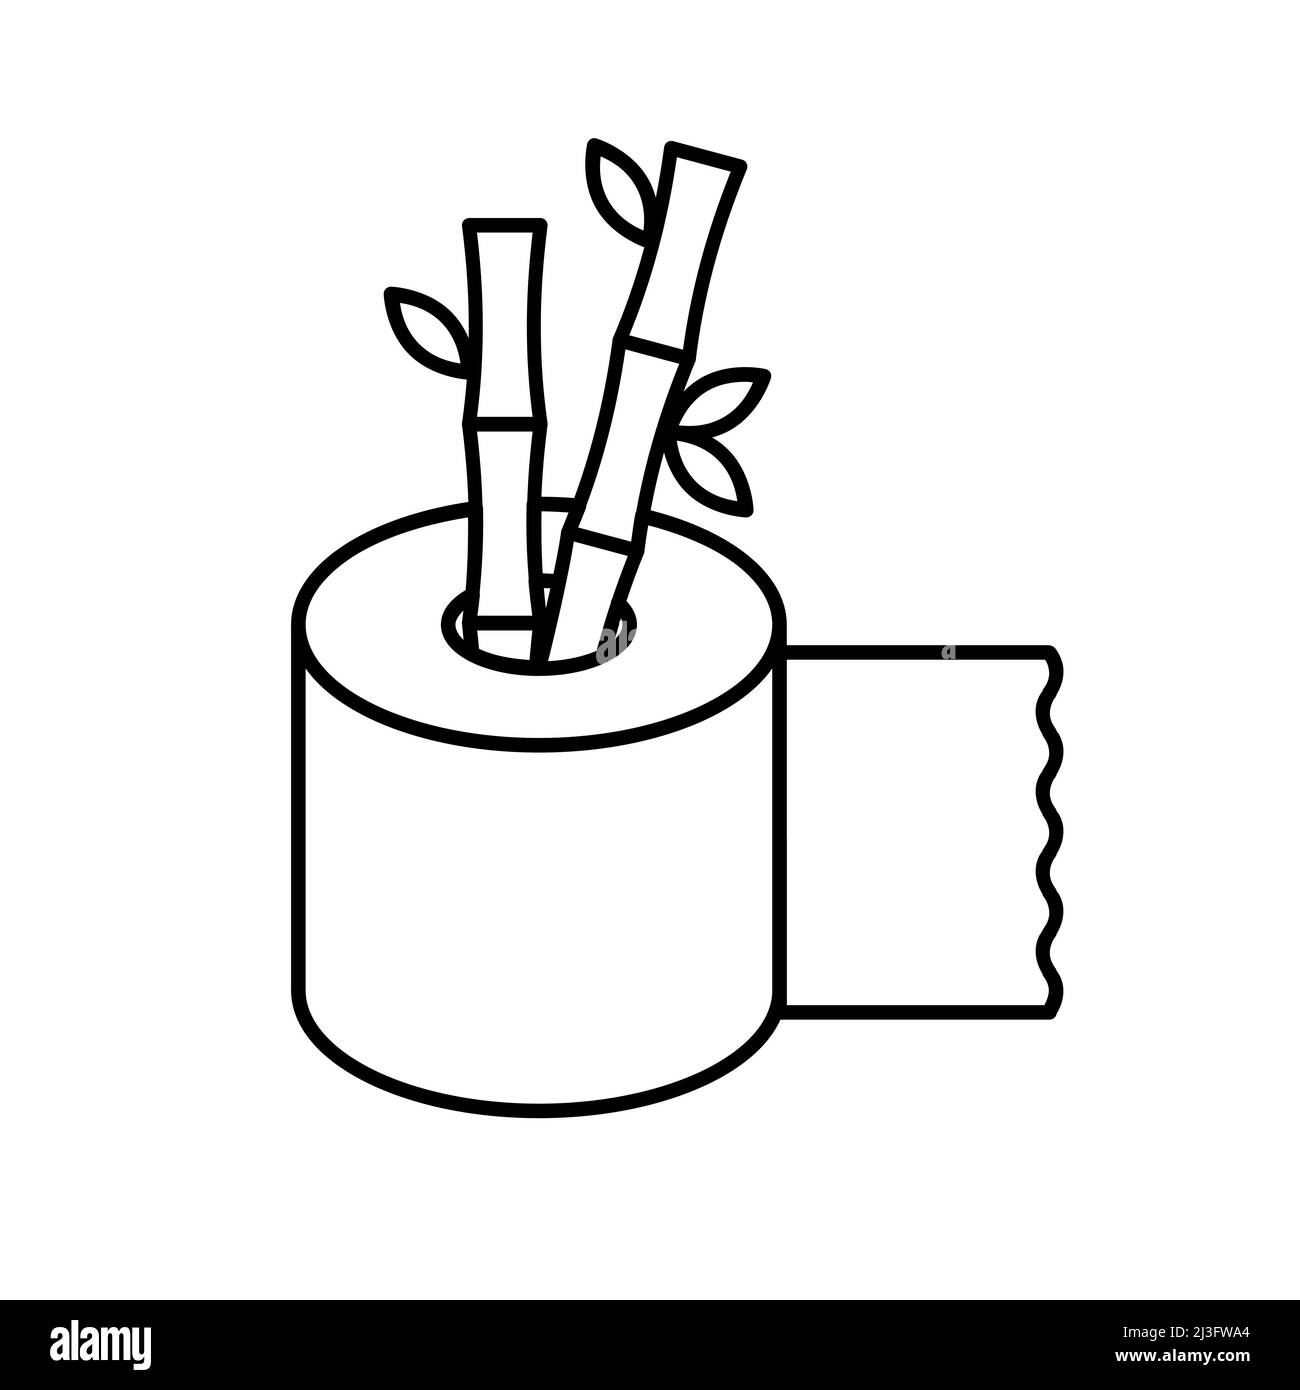 Symbol für Toilettenpapierlinie aus Bambus. Umweltfreundliche Papierindustrie ohne Bäume. Toilettenpapierrolle mit zwei Bambusstäbchen. Natürliches Bambuszellstoff-Produkt. Vektor Stock Vektor